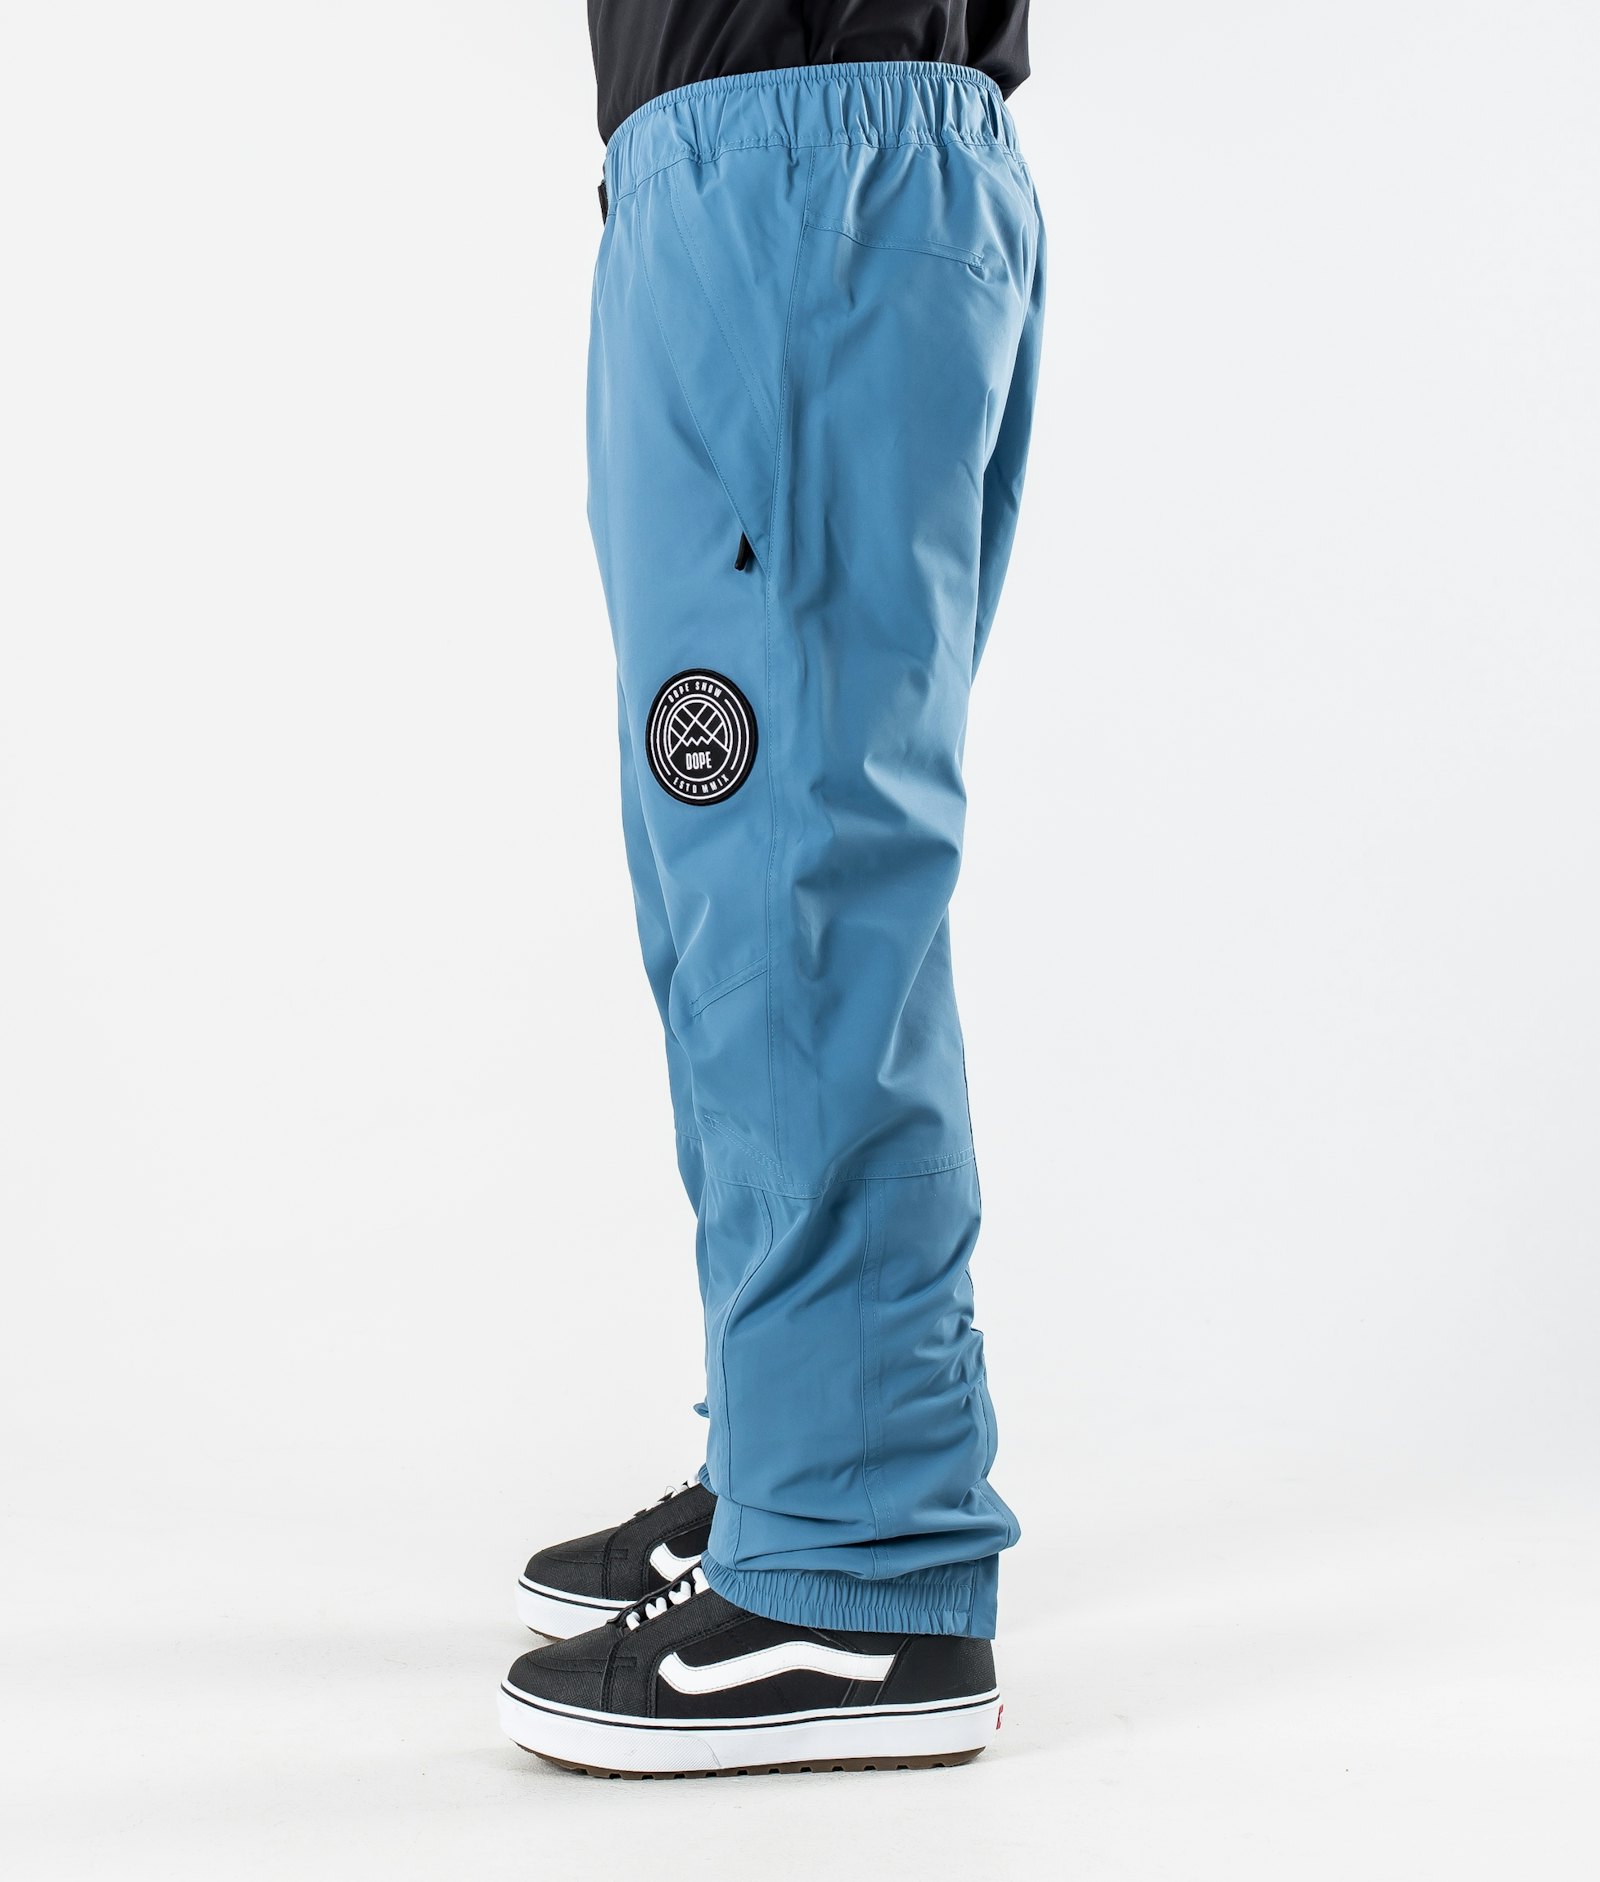 Blizzard 2020 Spodnie Snowboardowe Mężczyźni Blue Steel